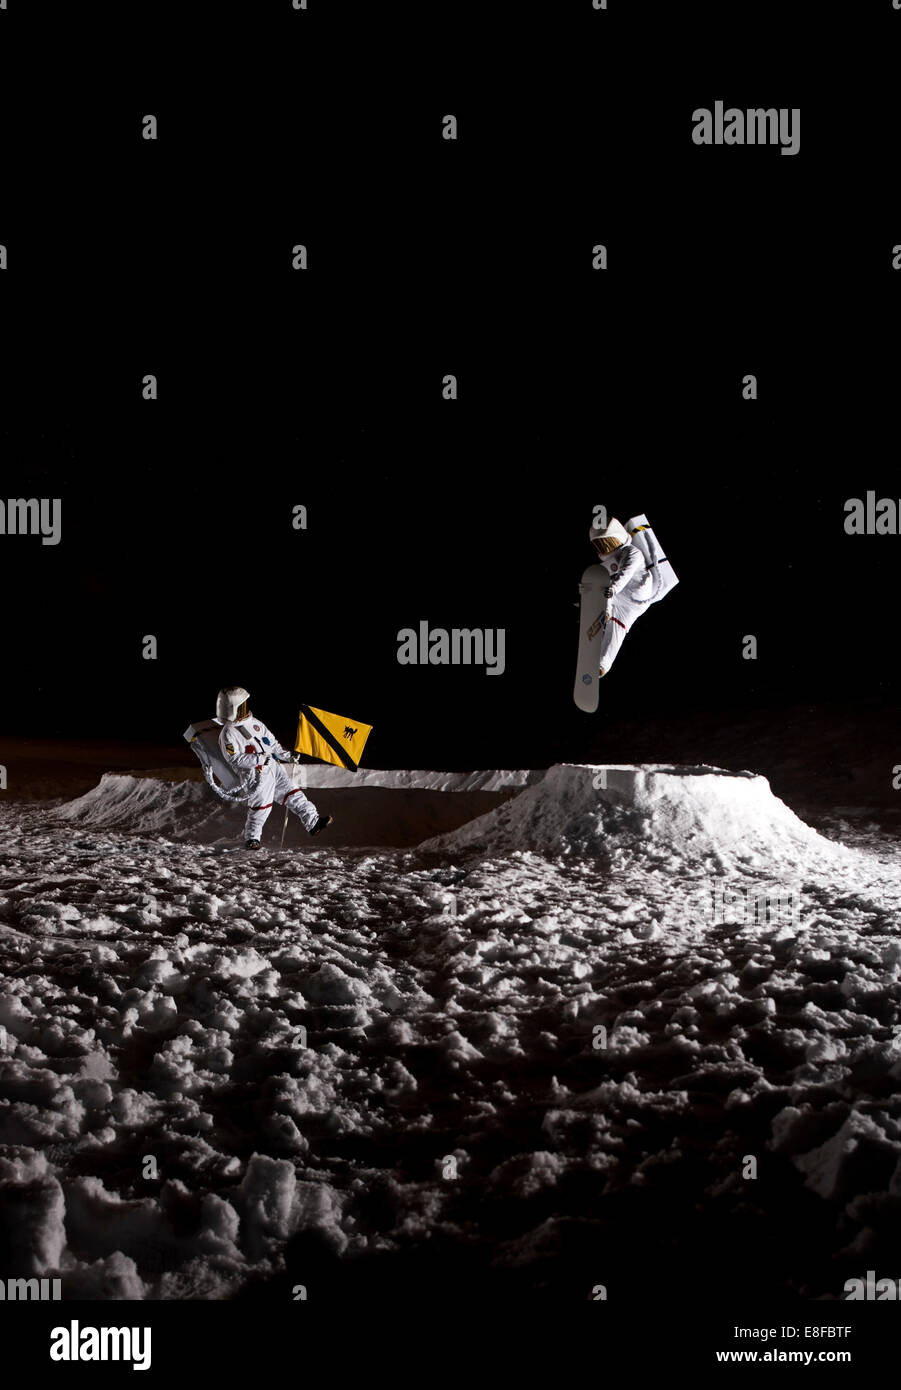 Astronaut snowboarding on the moon. Stock Photo